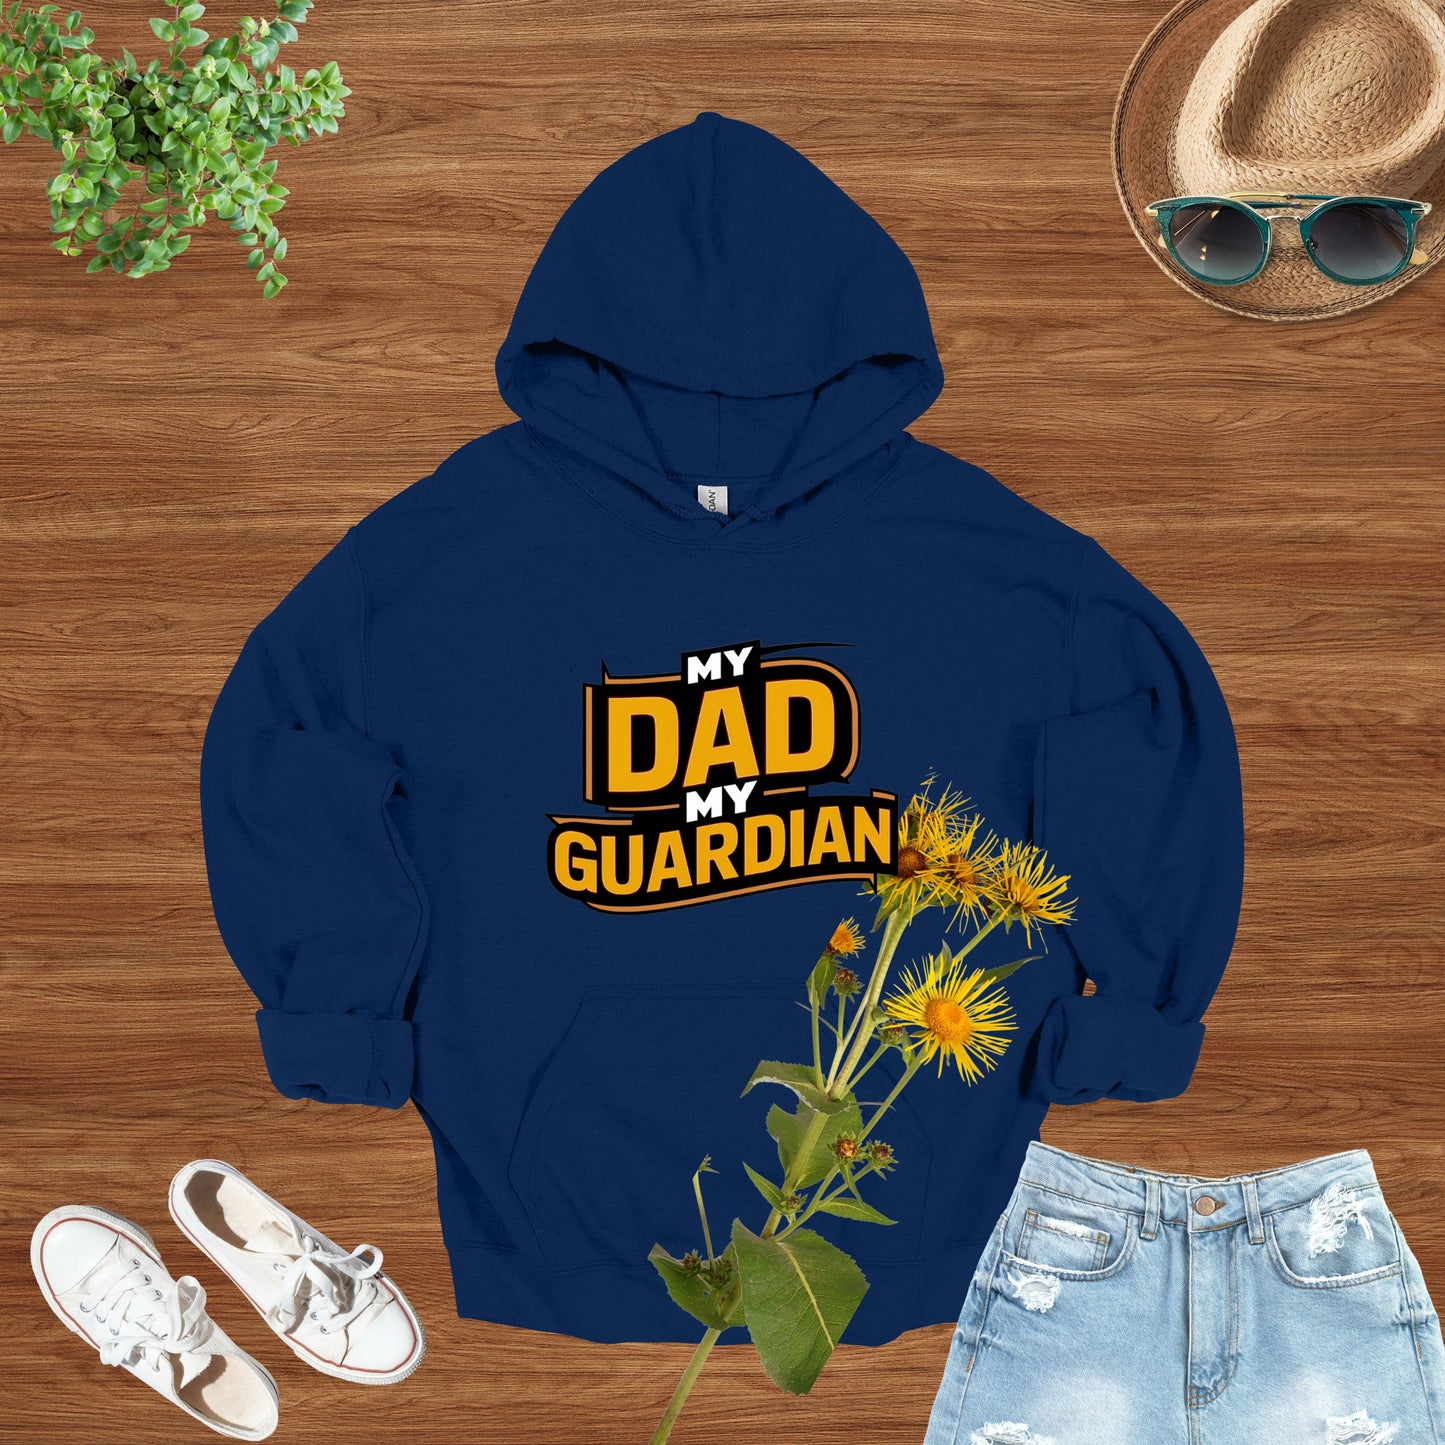 My Dad My Guardian Navy Hoodie